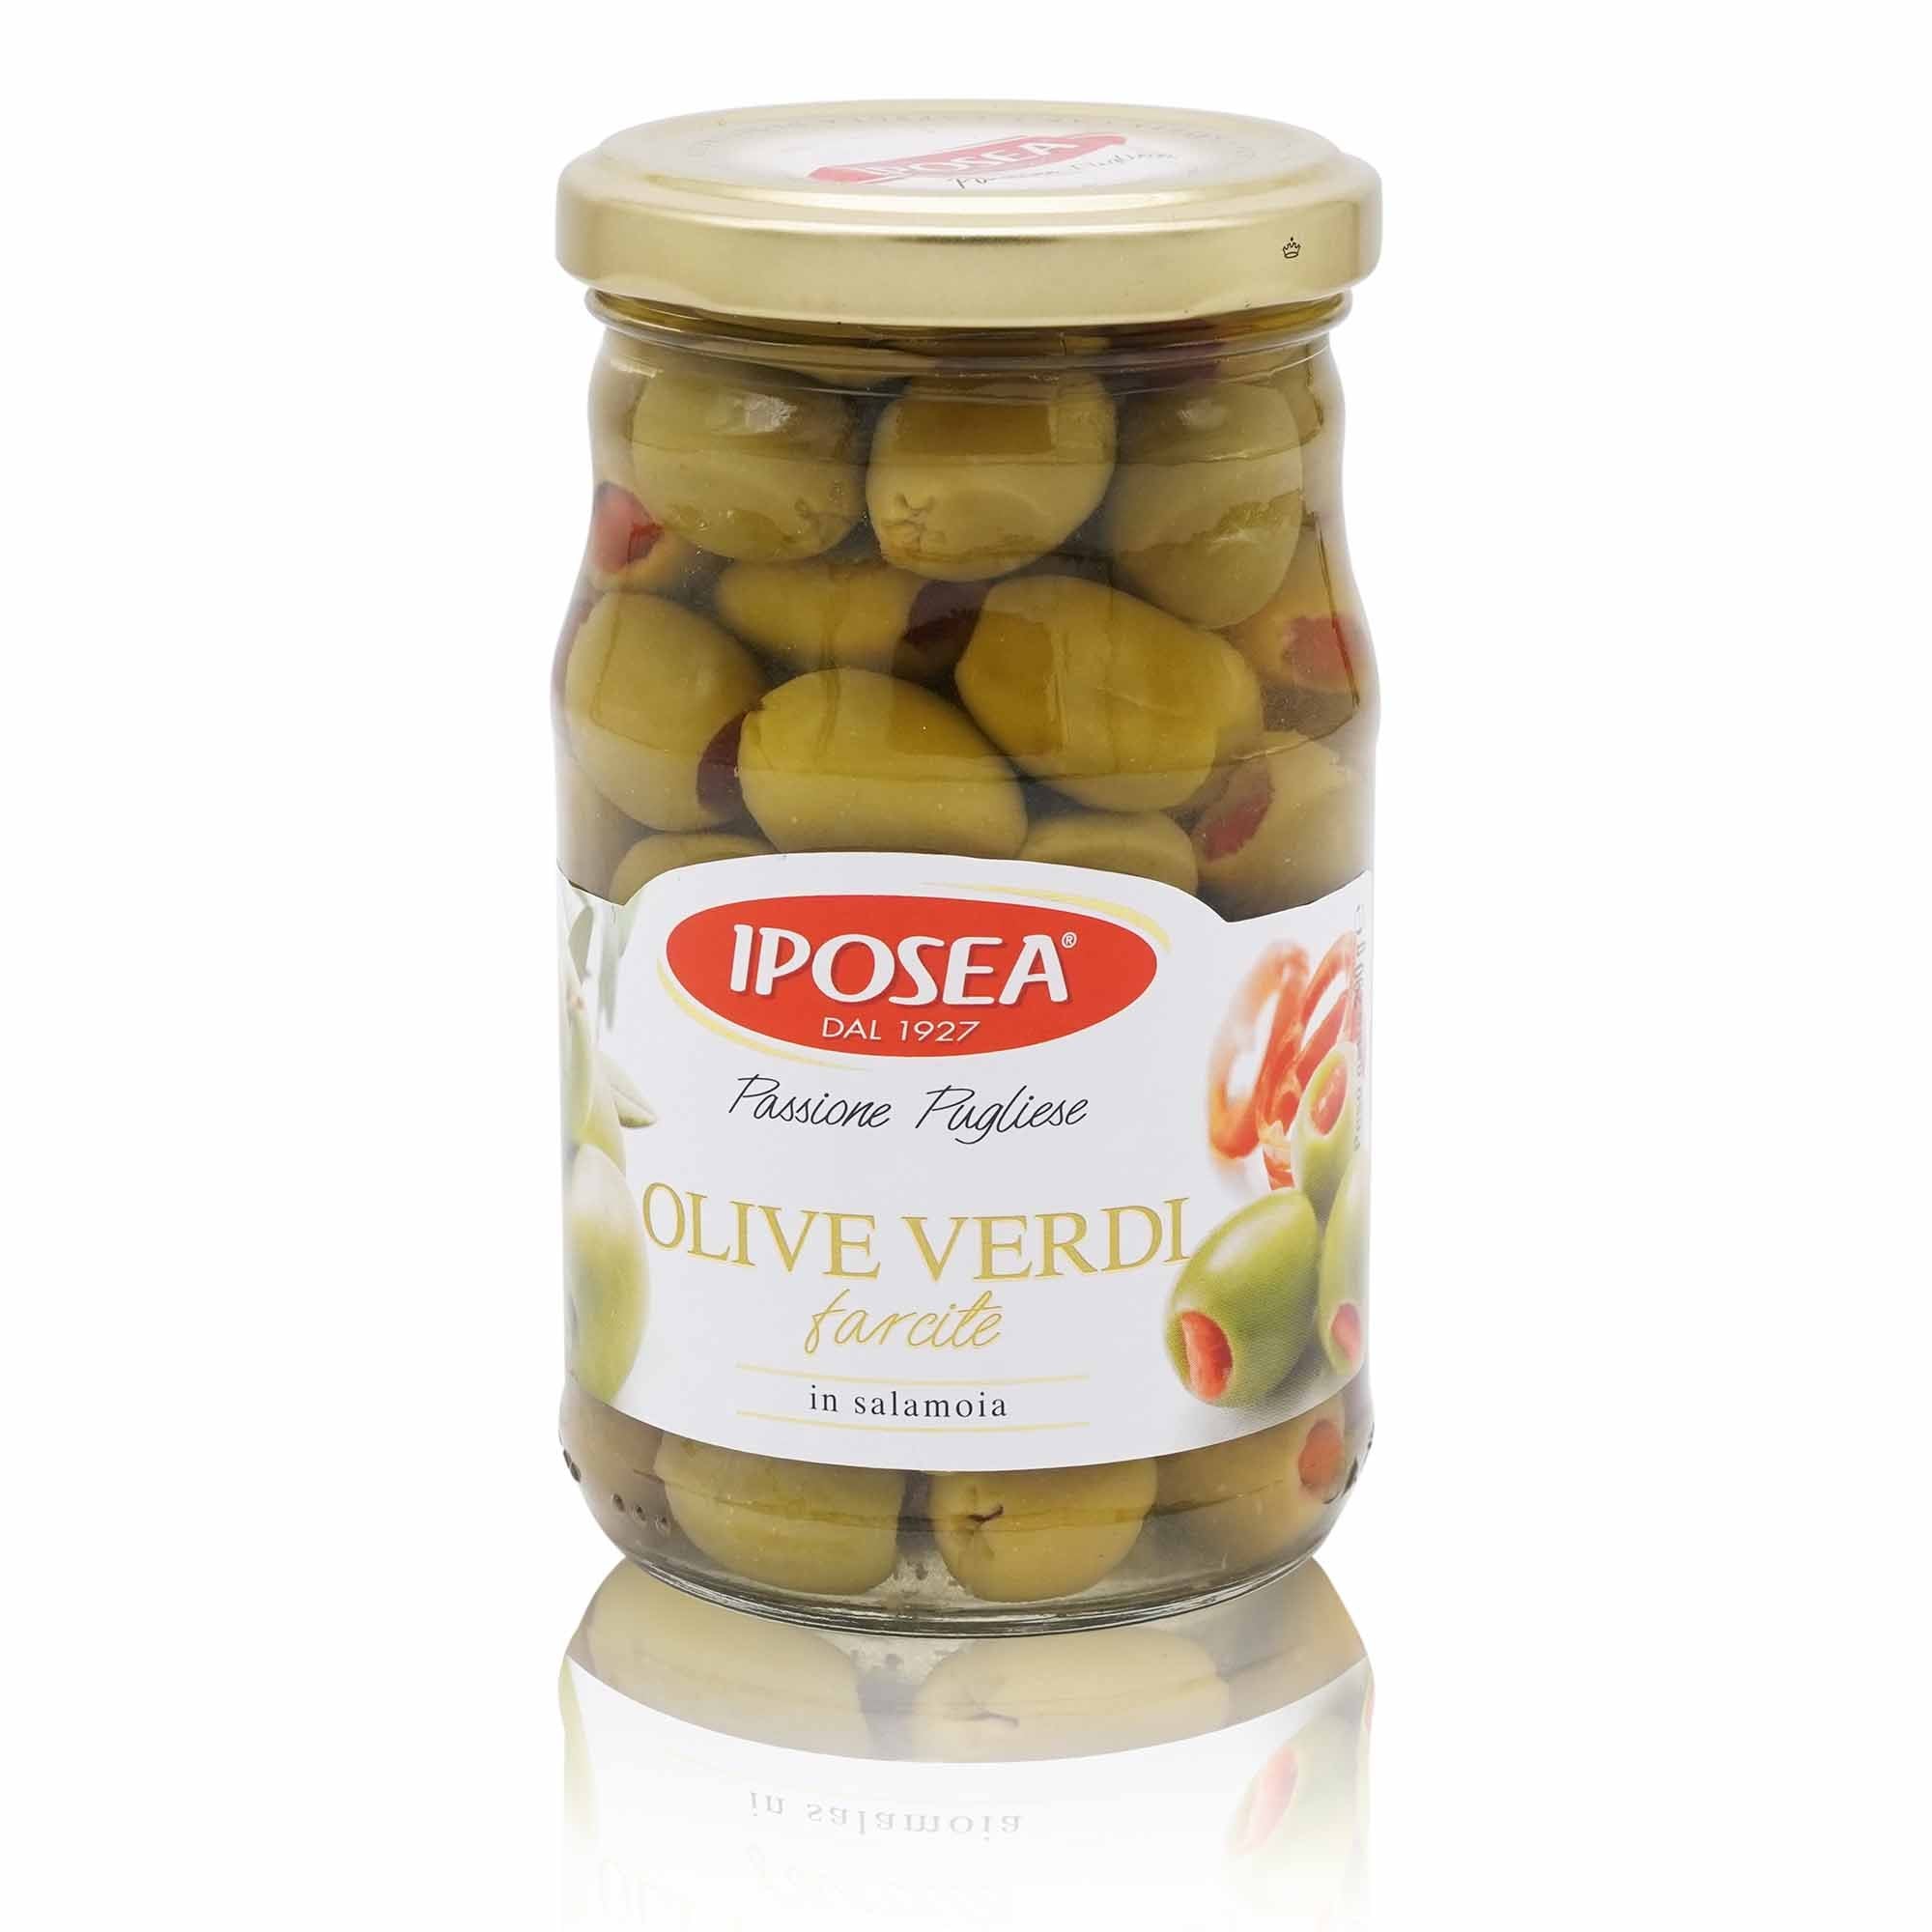 IPOSEA Olive verde farcite – Gefüllte grüne Oliven - 0,290kg